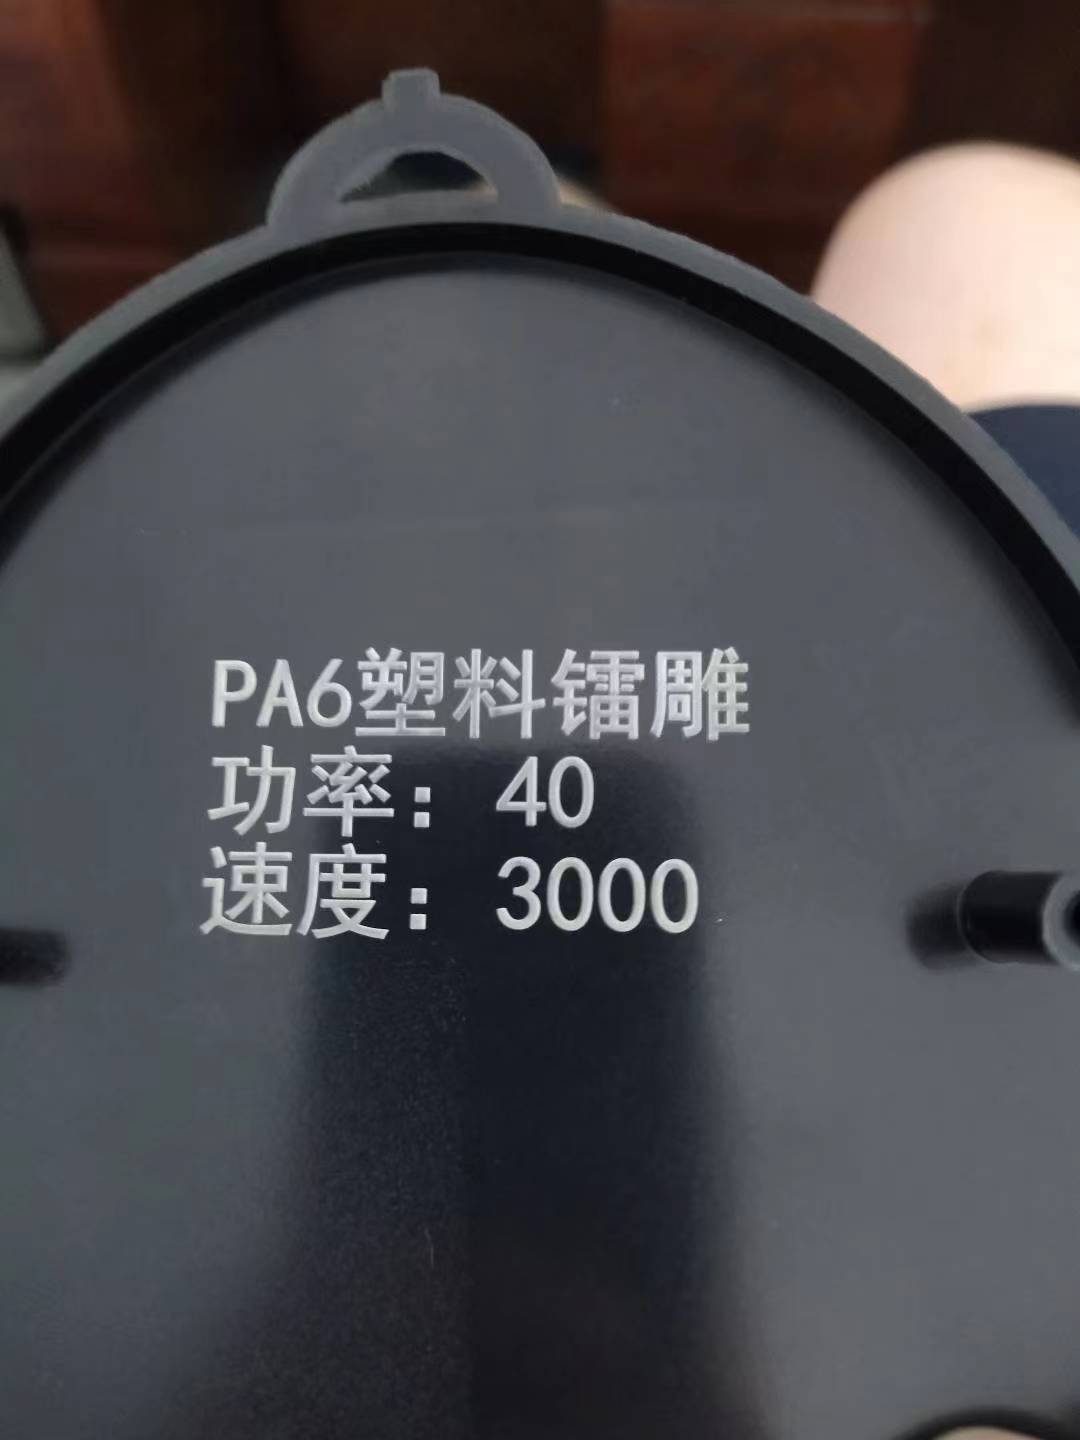 PA66激光粉镭雕粉不影响阻燃